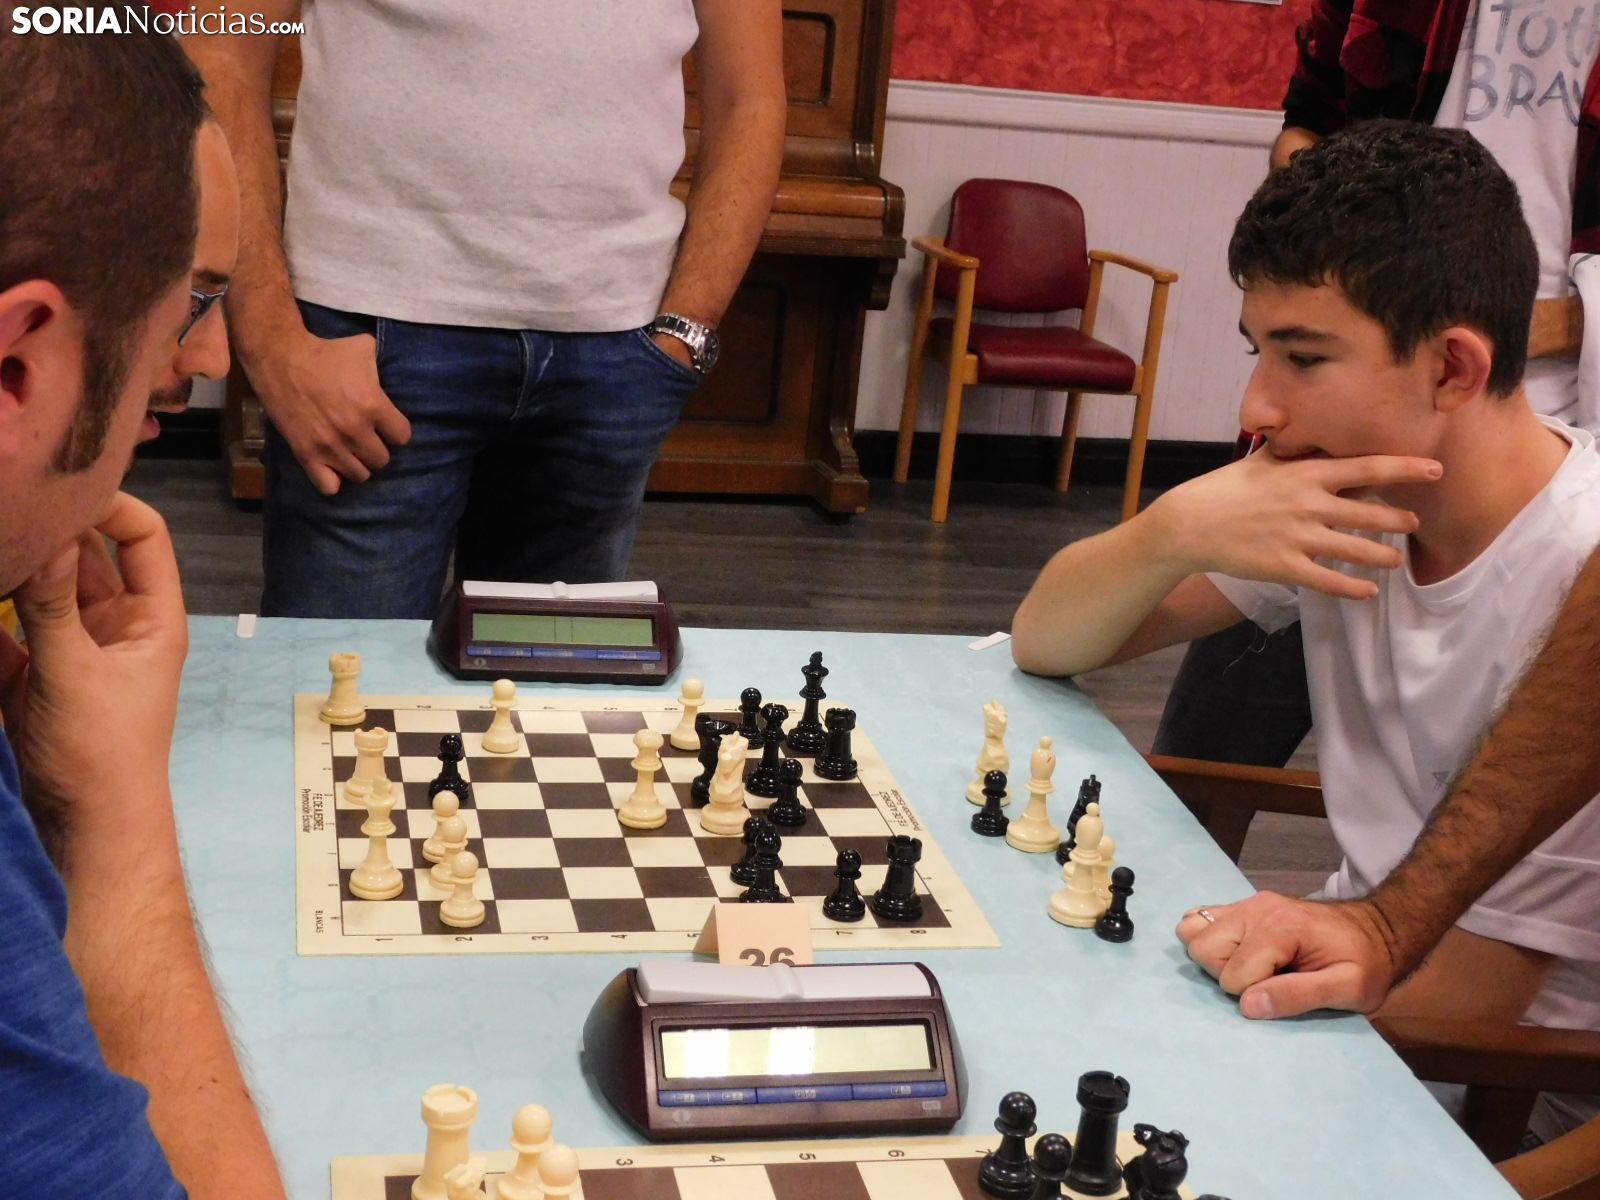 Lanzan el ajedrez de Las Ánimas - SoriaNoticias